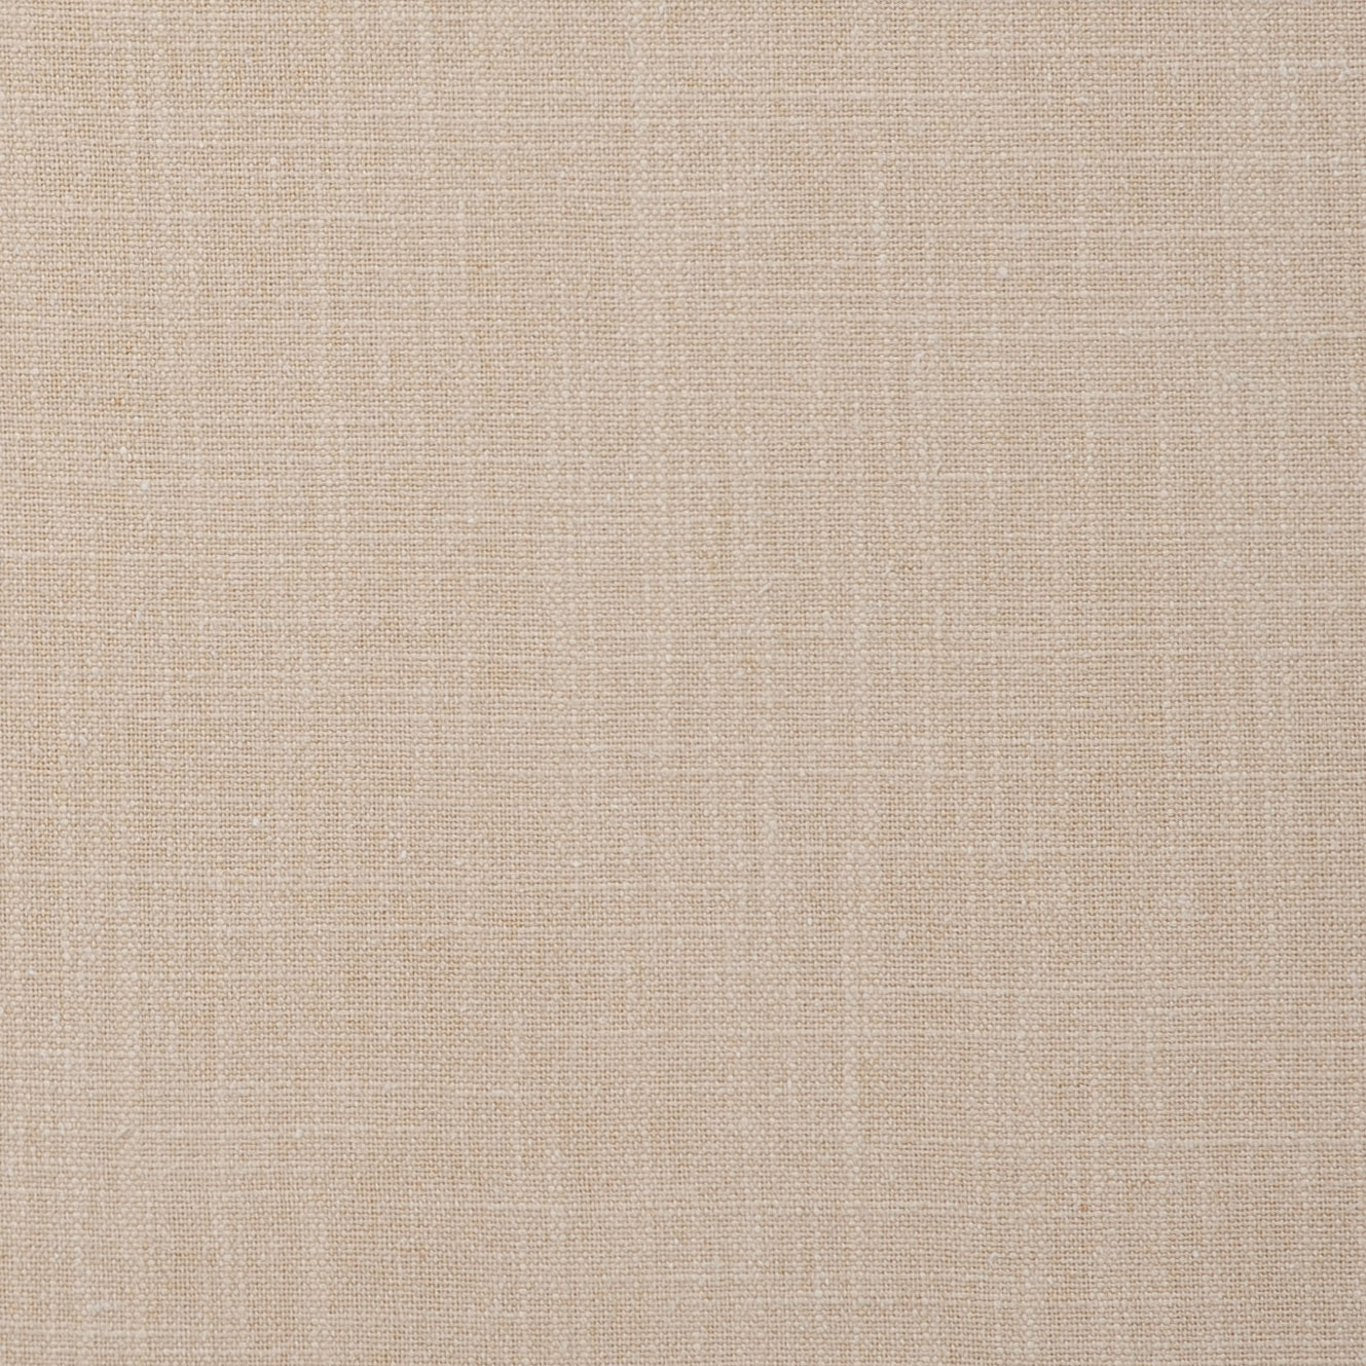 Easton Fabric by Clarke & Clarke - F0736/04 - Linen